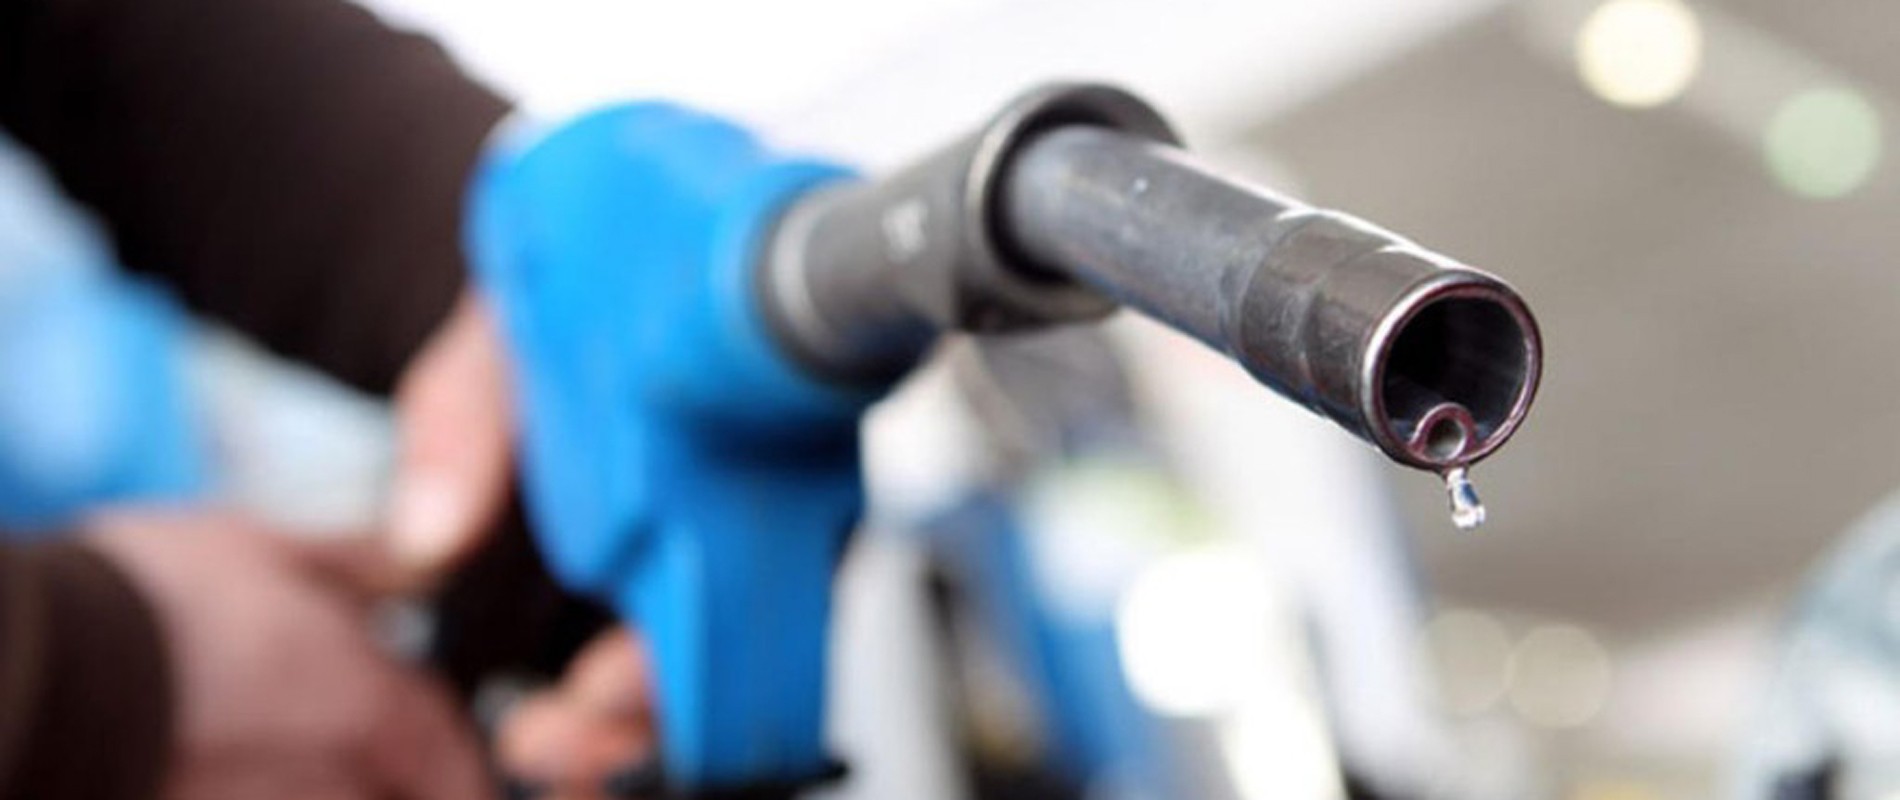 gasolina - etanol - diesel - preço - combustível